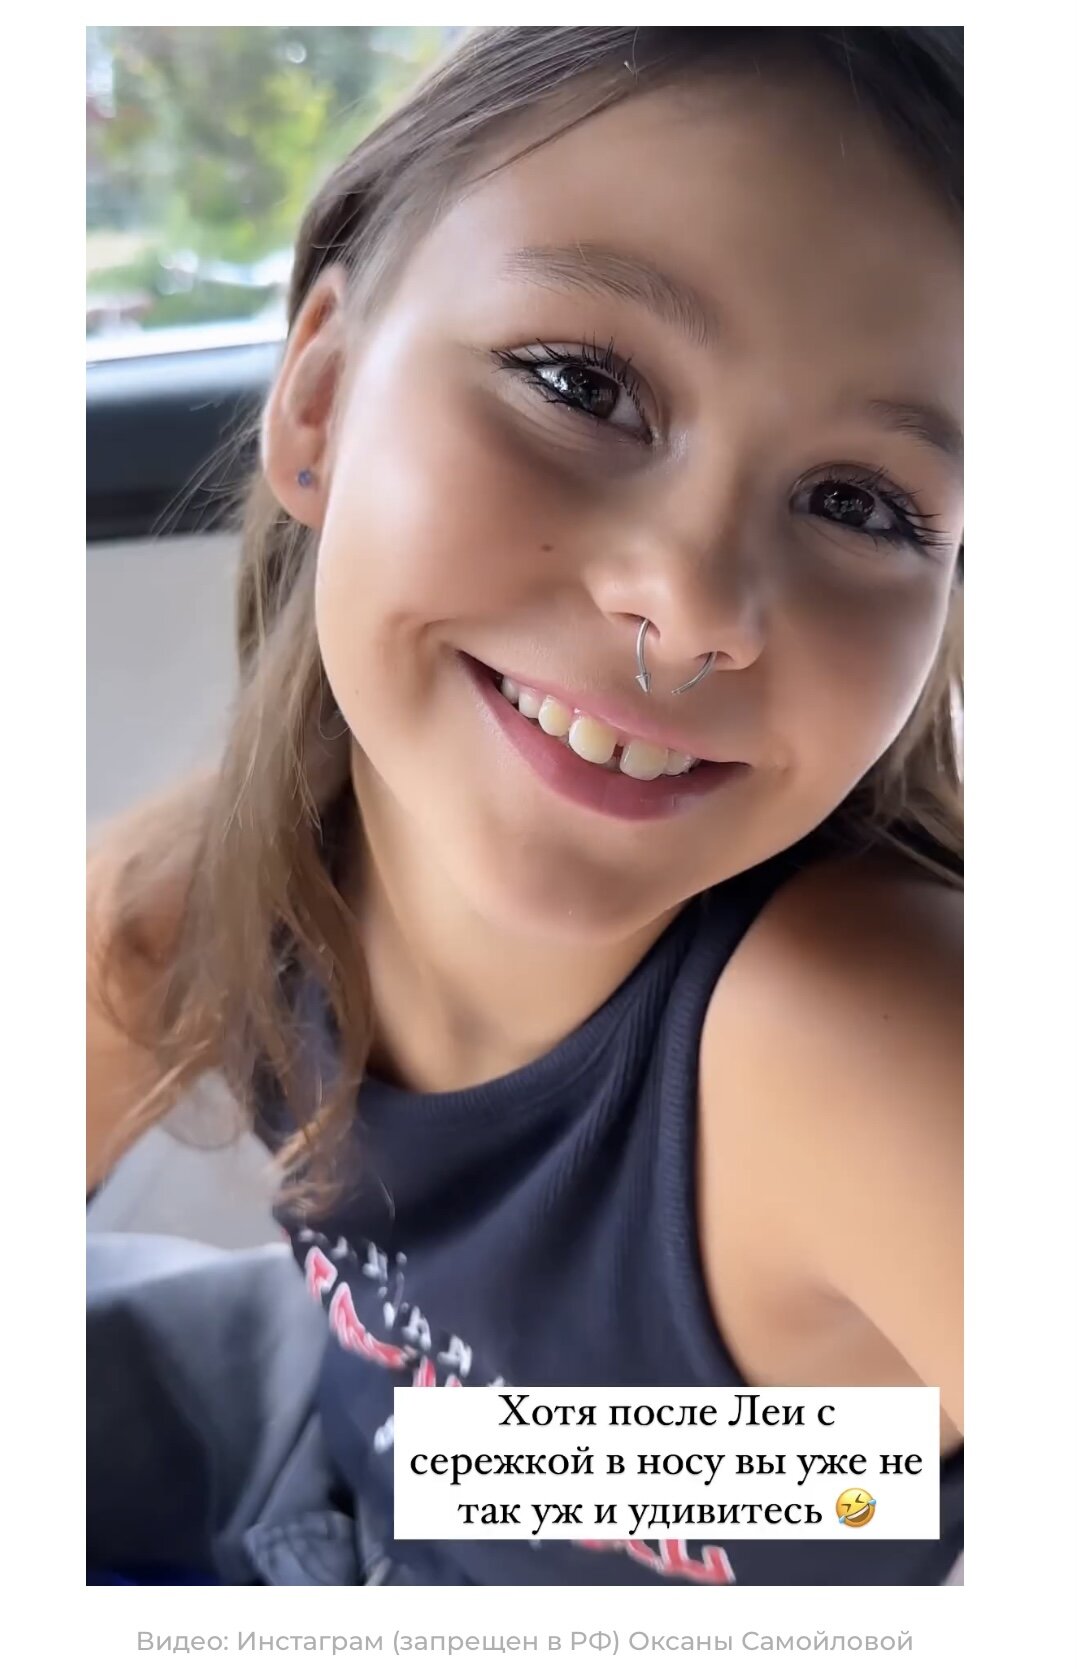 «Как матери мне терять нечего»: 8-летняя дочь Оксаны Самойловой сделала пирсинг на лице